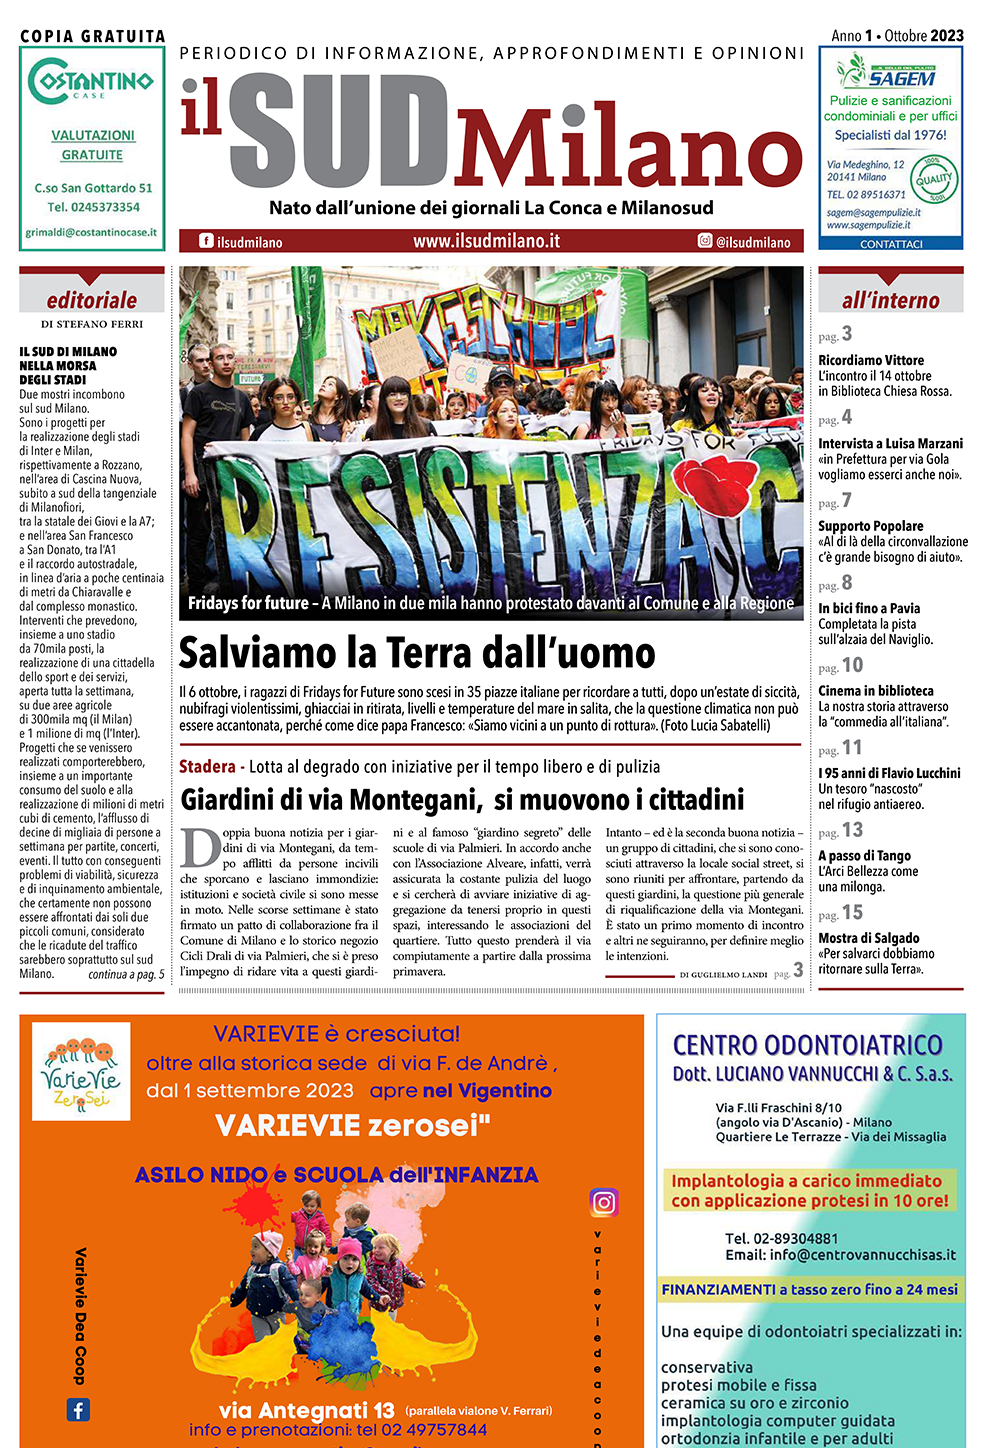 Prima pagina del giornale il SUD Milano di ottobre 2023